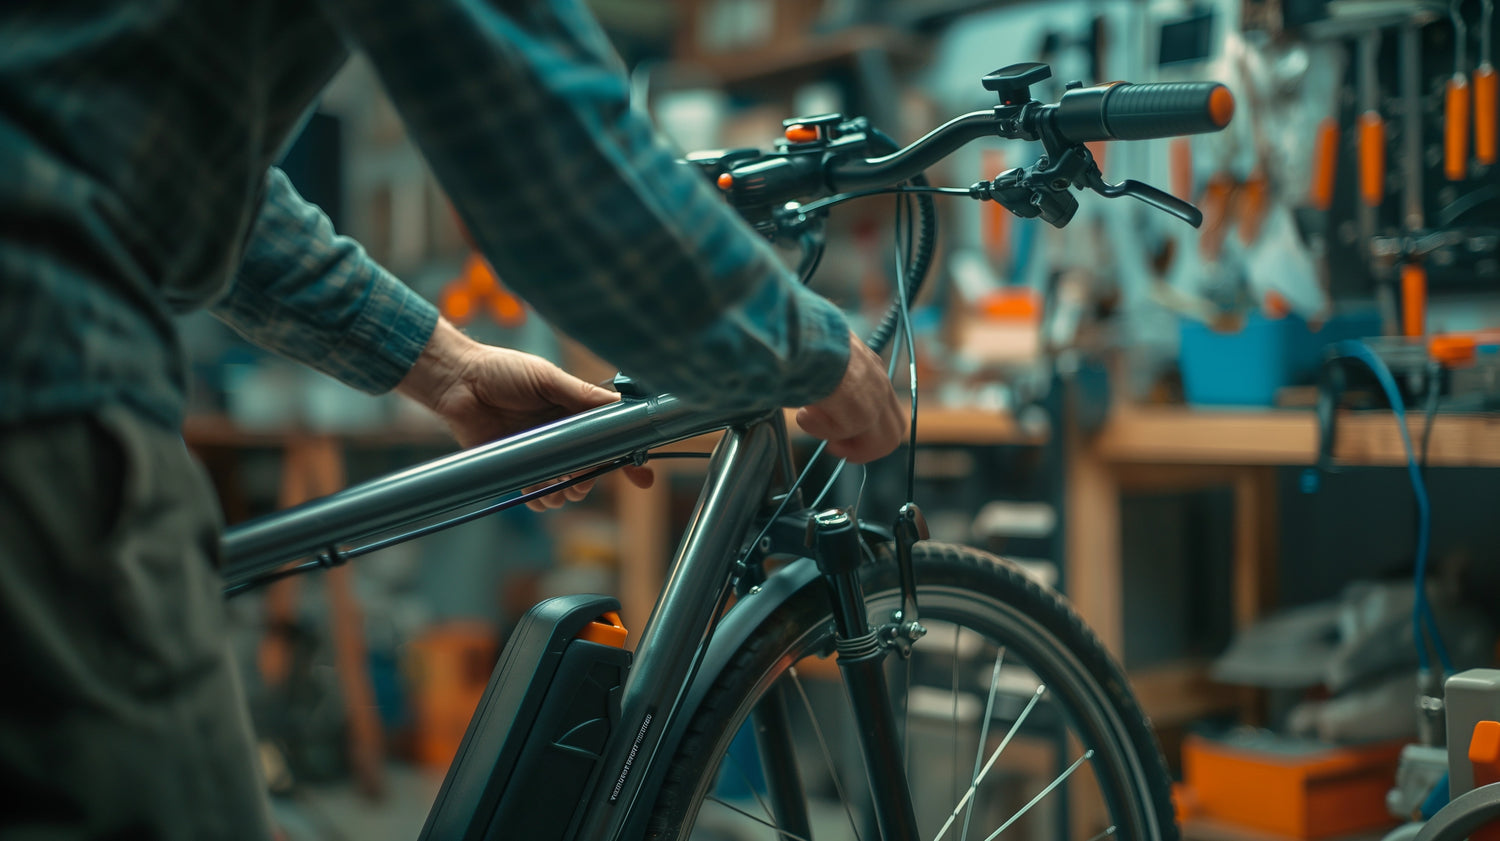 Przekształć swój rower w elektryczny cud techniki, czyli jakie wymagania musi spełniać Twój rower zanim przerobisz go na eBike